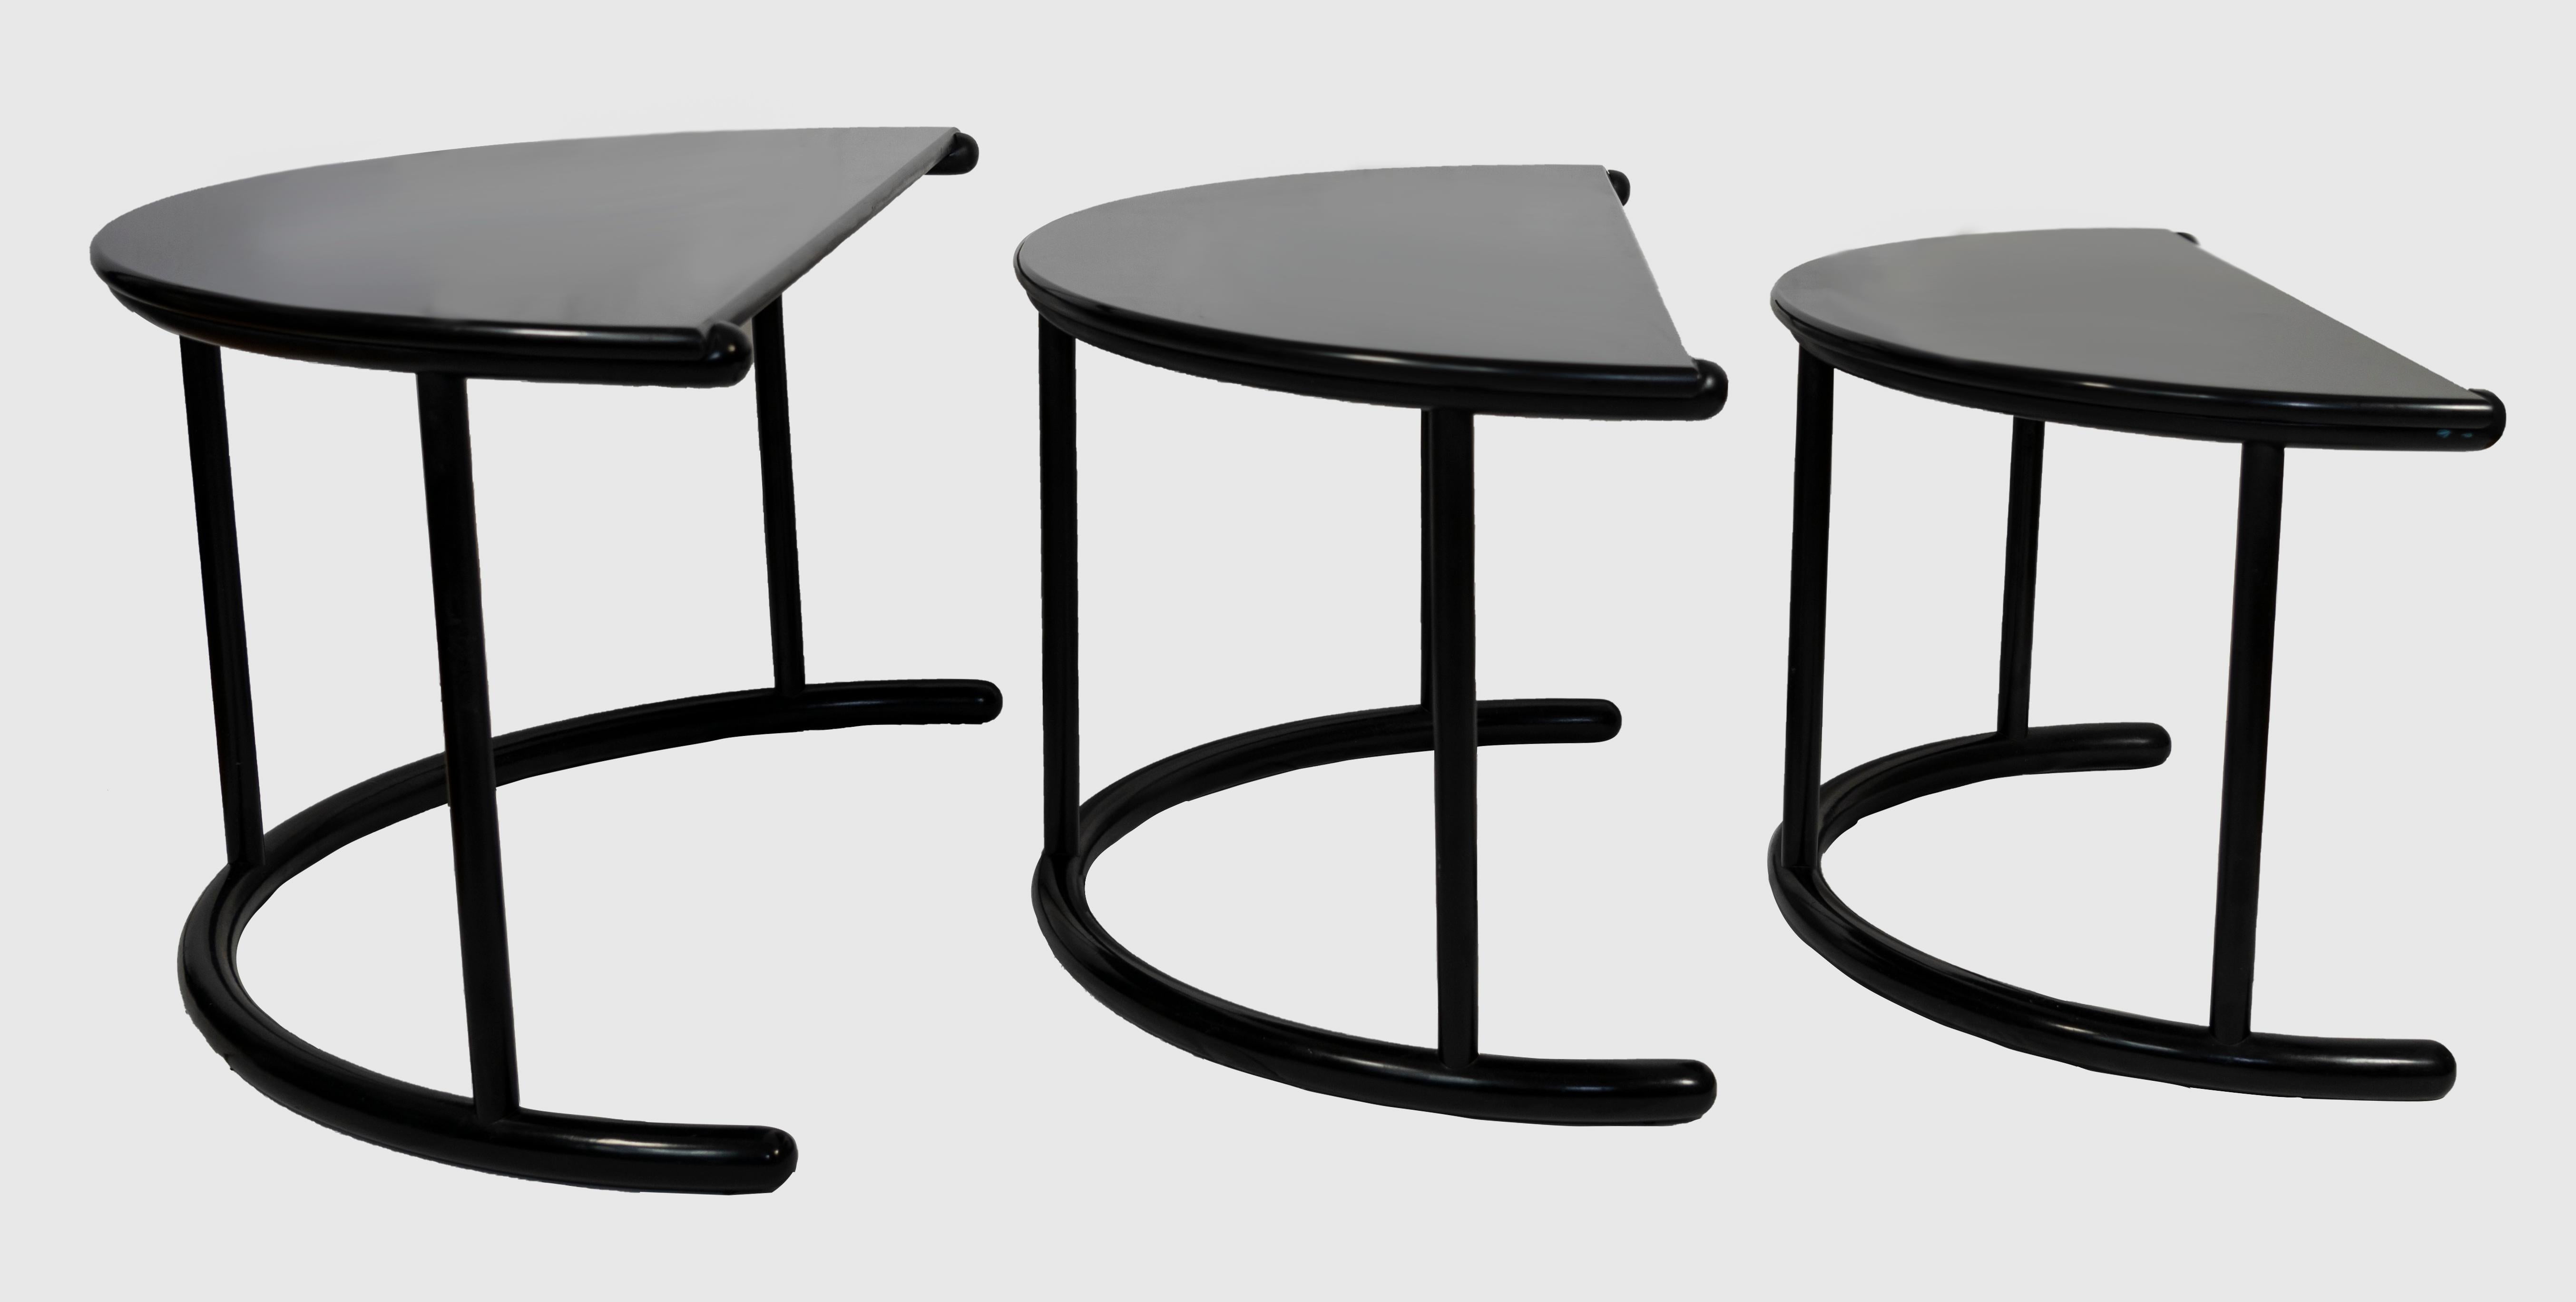 La table basse Three Tria est un ensemble de meubles au design original réalisé par Gianfranco Frattini pour Morphos of Acerbis International. 
Division (Label de fabrication) en Italie dans les années 1980. 

Cet ensemble appartient à la